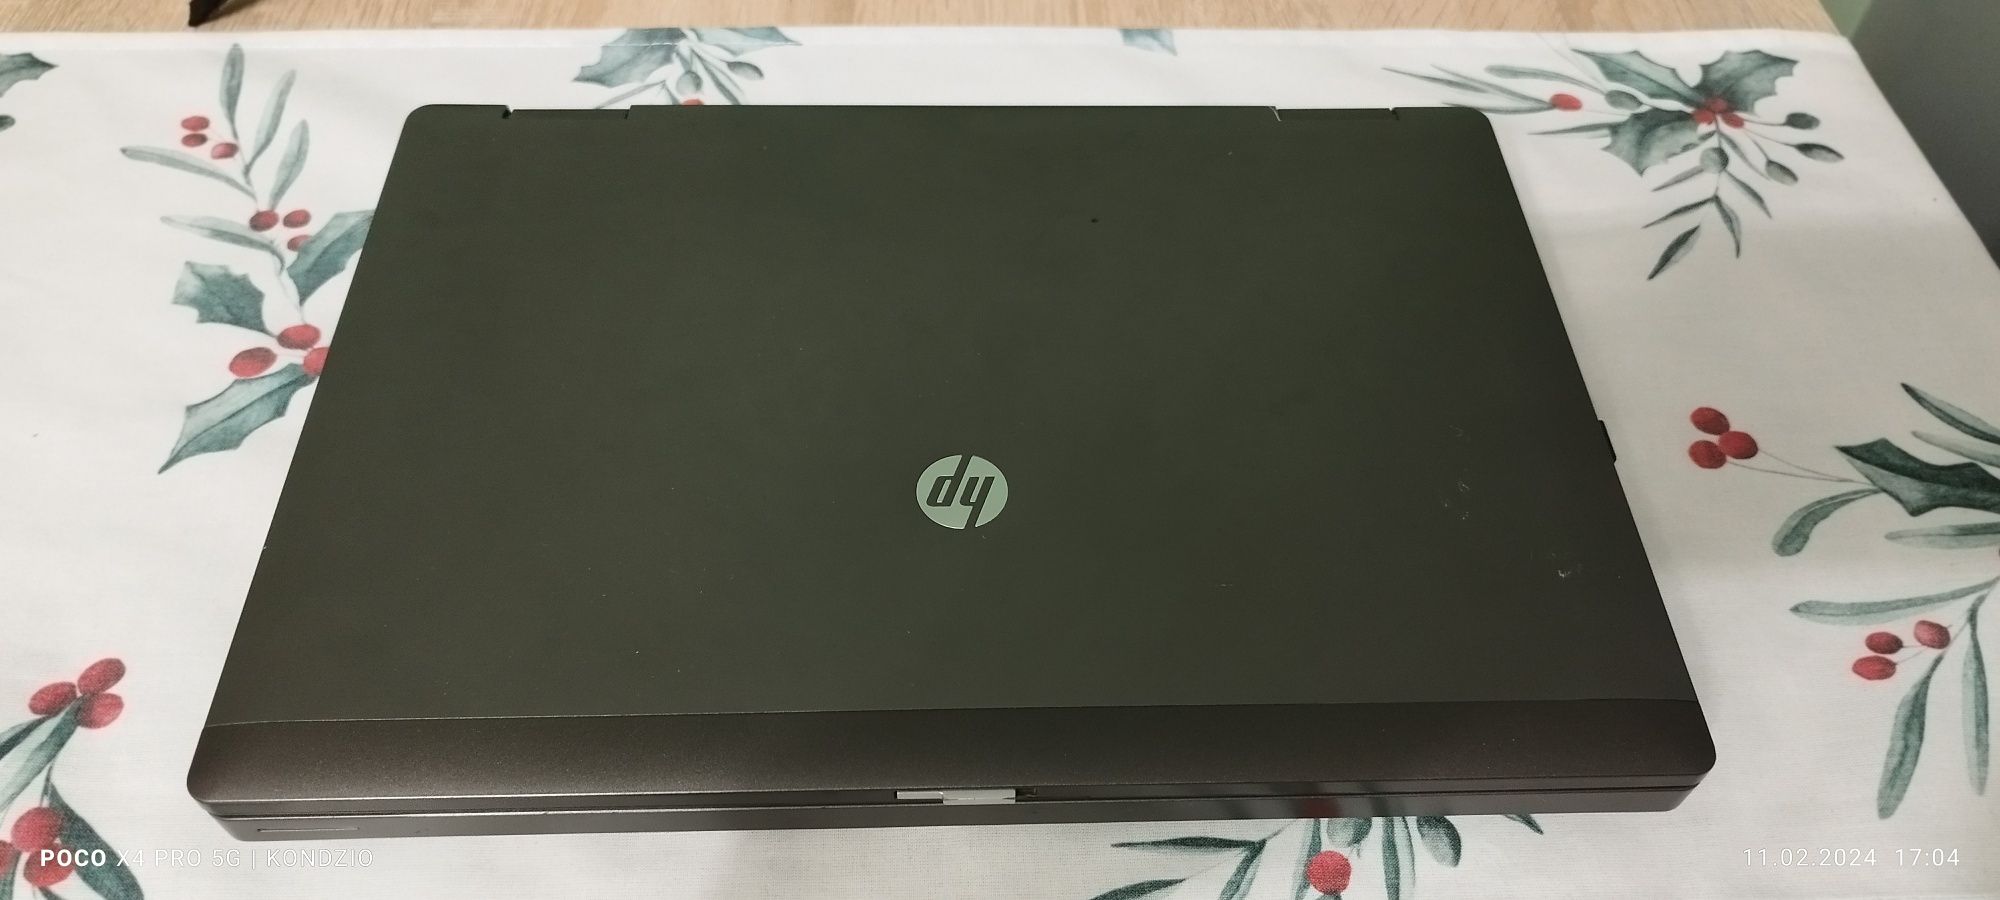 Laptop HP ProBook 6460b, 16GB ram, SSD 500GB, i5 2410M